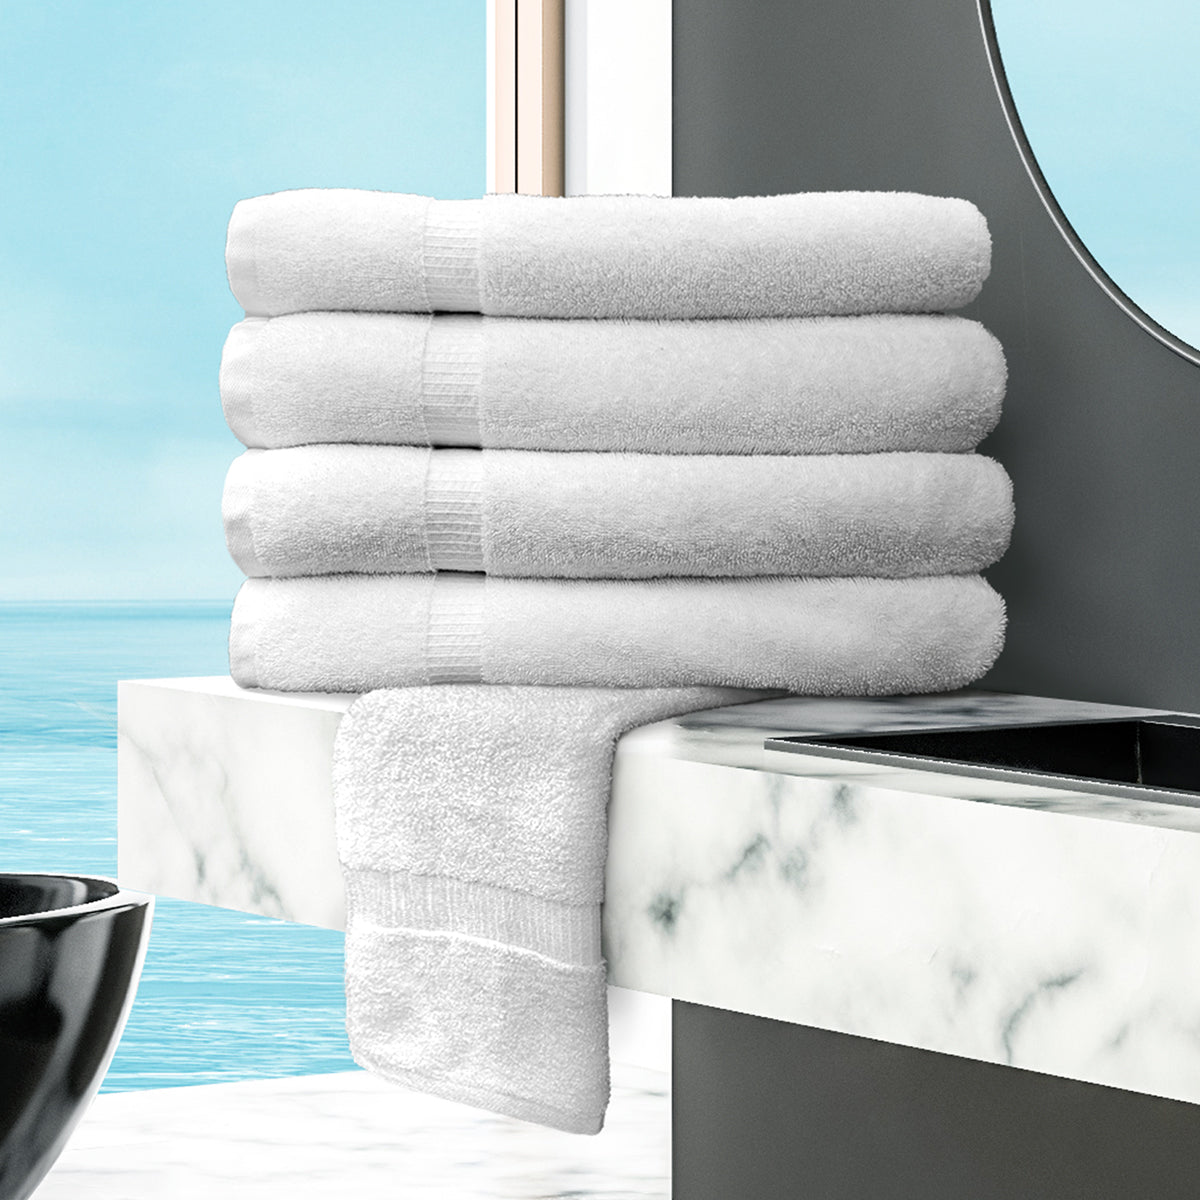 Bathmat - Oxford Bellezza Towel